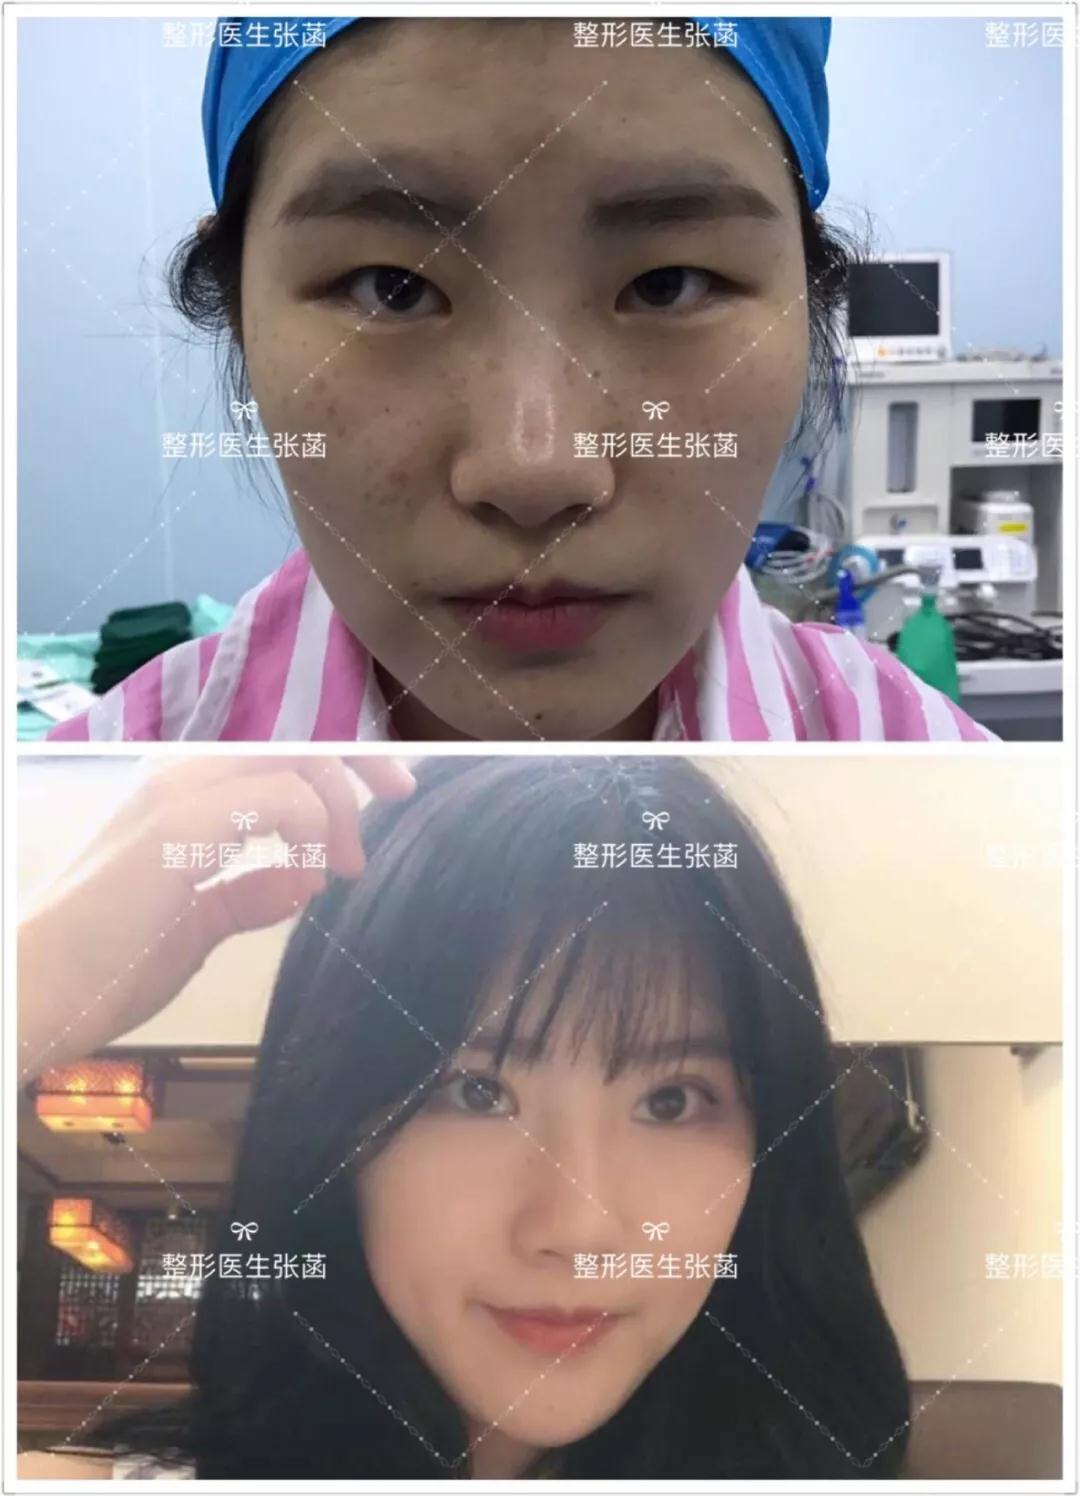 韩式三点双眼皮术前、术后即刻与术后15天对比图_双眼皮手术_双眼皮手术治疗介绍 - 好大夫在线